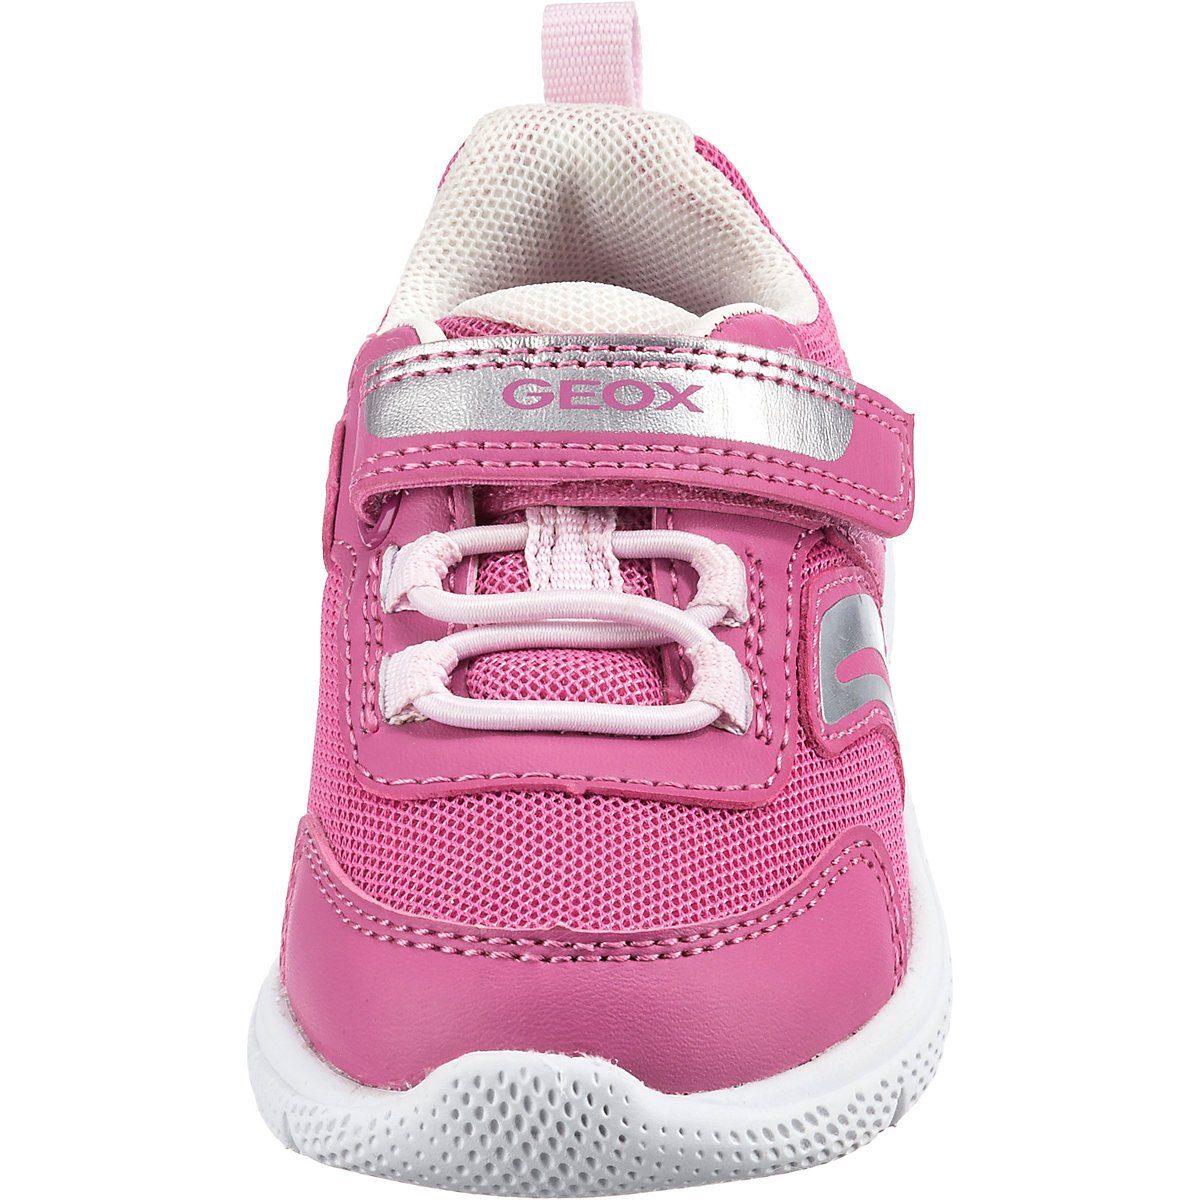 Schuhe Babyschuhe Mädchen Geox Baby Halbschuhe SPRINTYE für Mädchen Schnürschuh